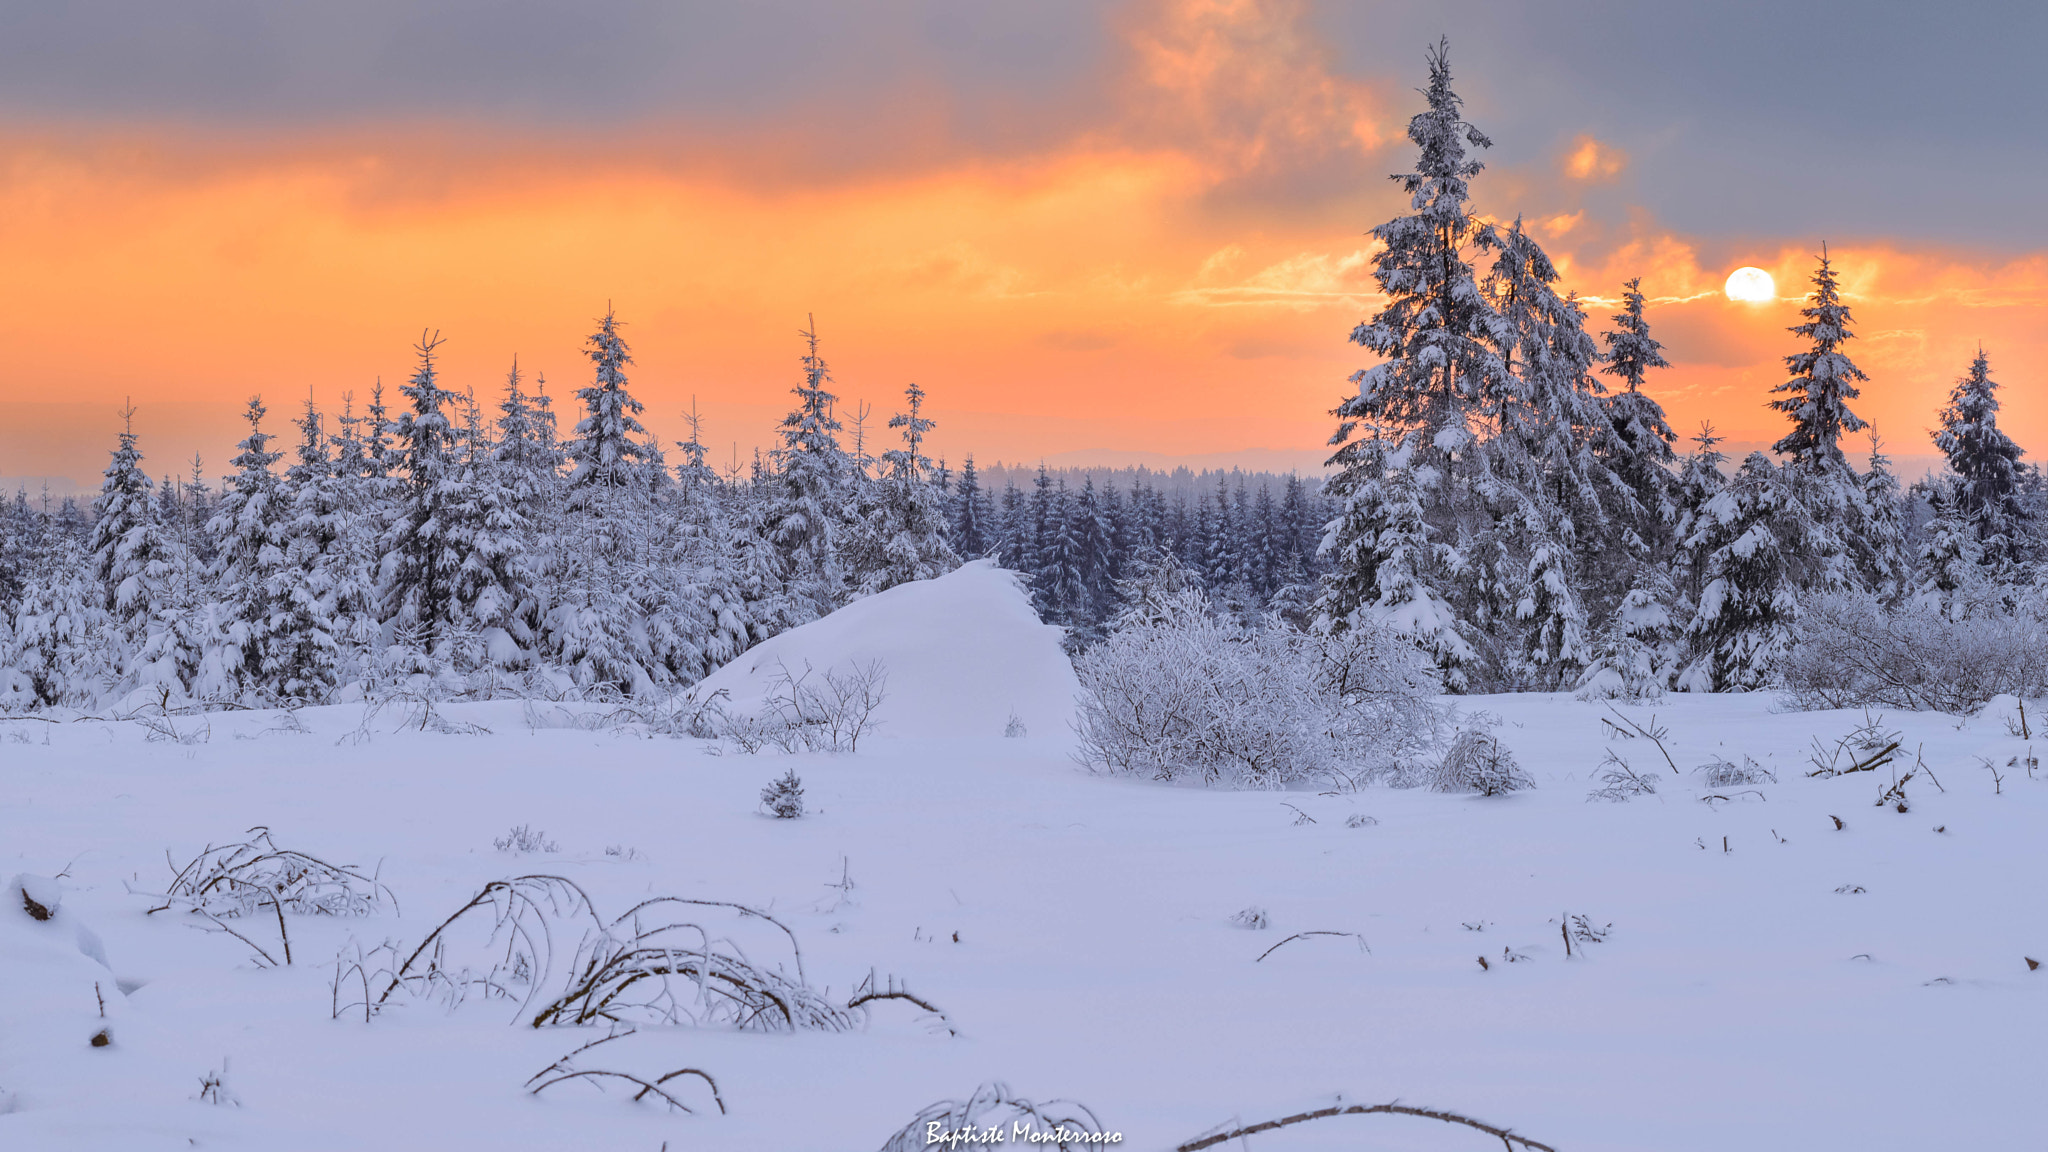 Nikon D610 + AF Zoom-Nikkor 80-200mm f/2.8 ED sample photo. Snow-covered sunset photography